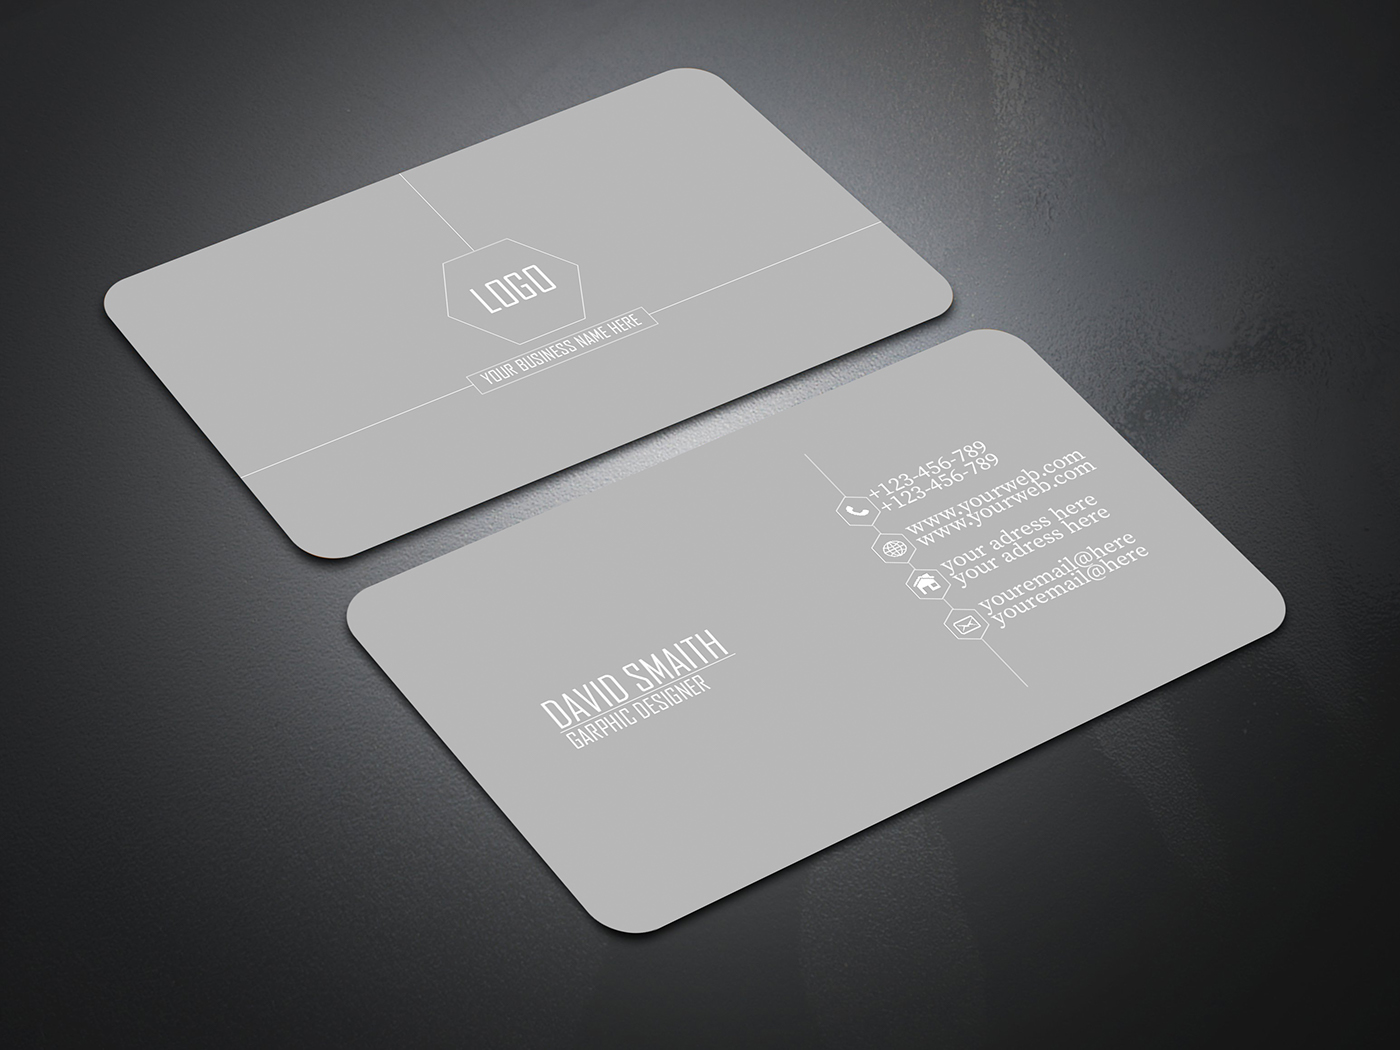 black business card call classy clean corporate creative design elegant